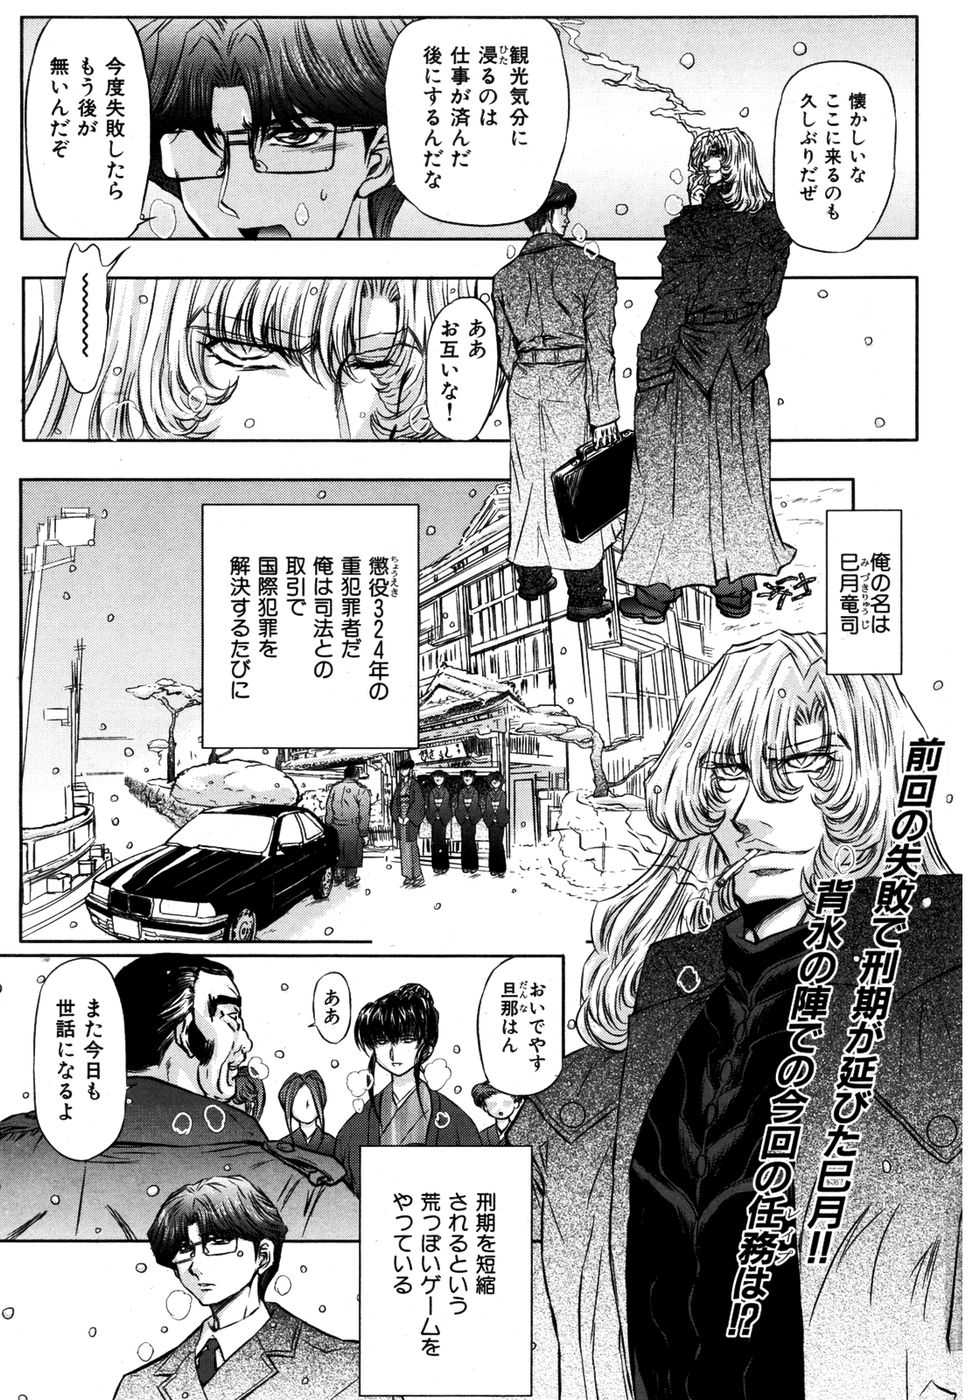 [2007.03.15]Comic Kairakuten Beast Volume 17 